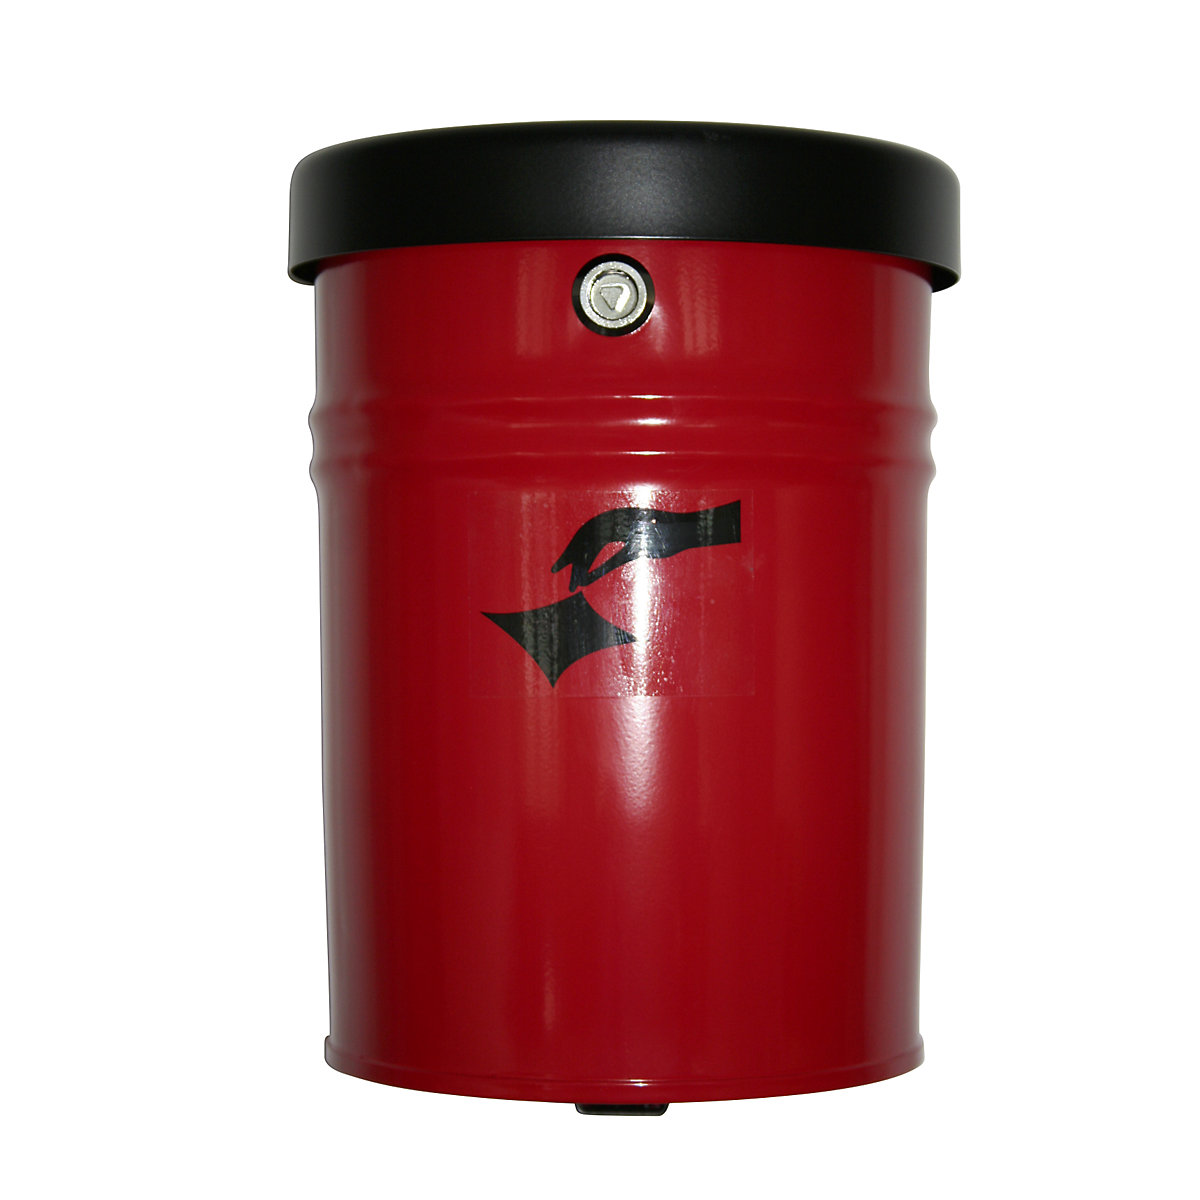 Nástěnná nádoba na odpadky, uzamykatelná, objem 24 l, v x Ø 370 x 295 mm, červená